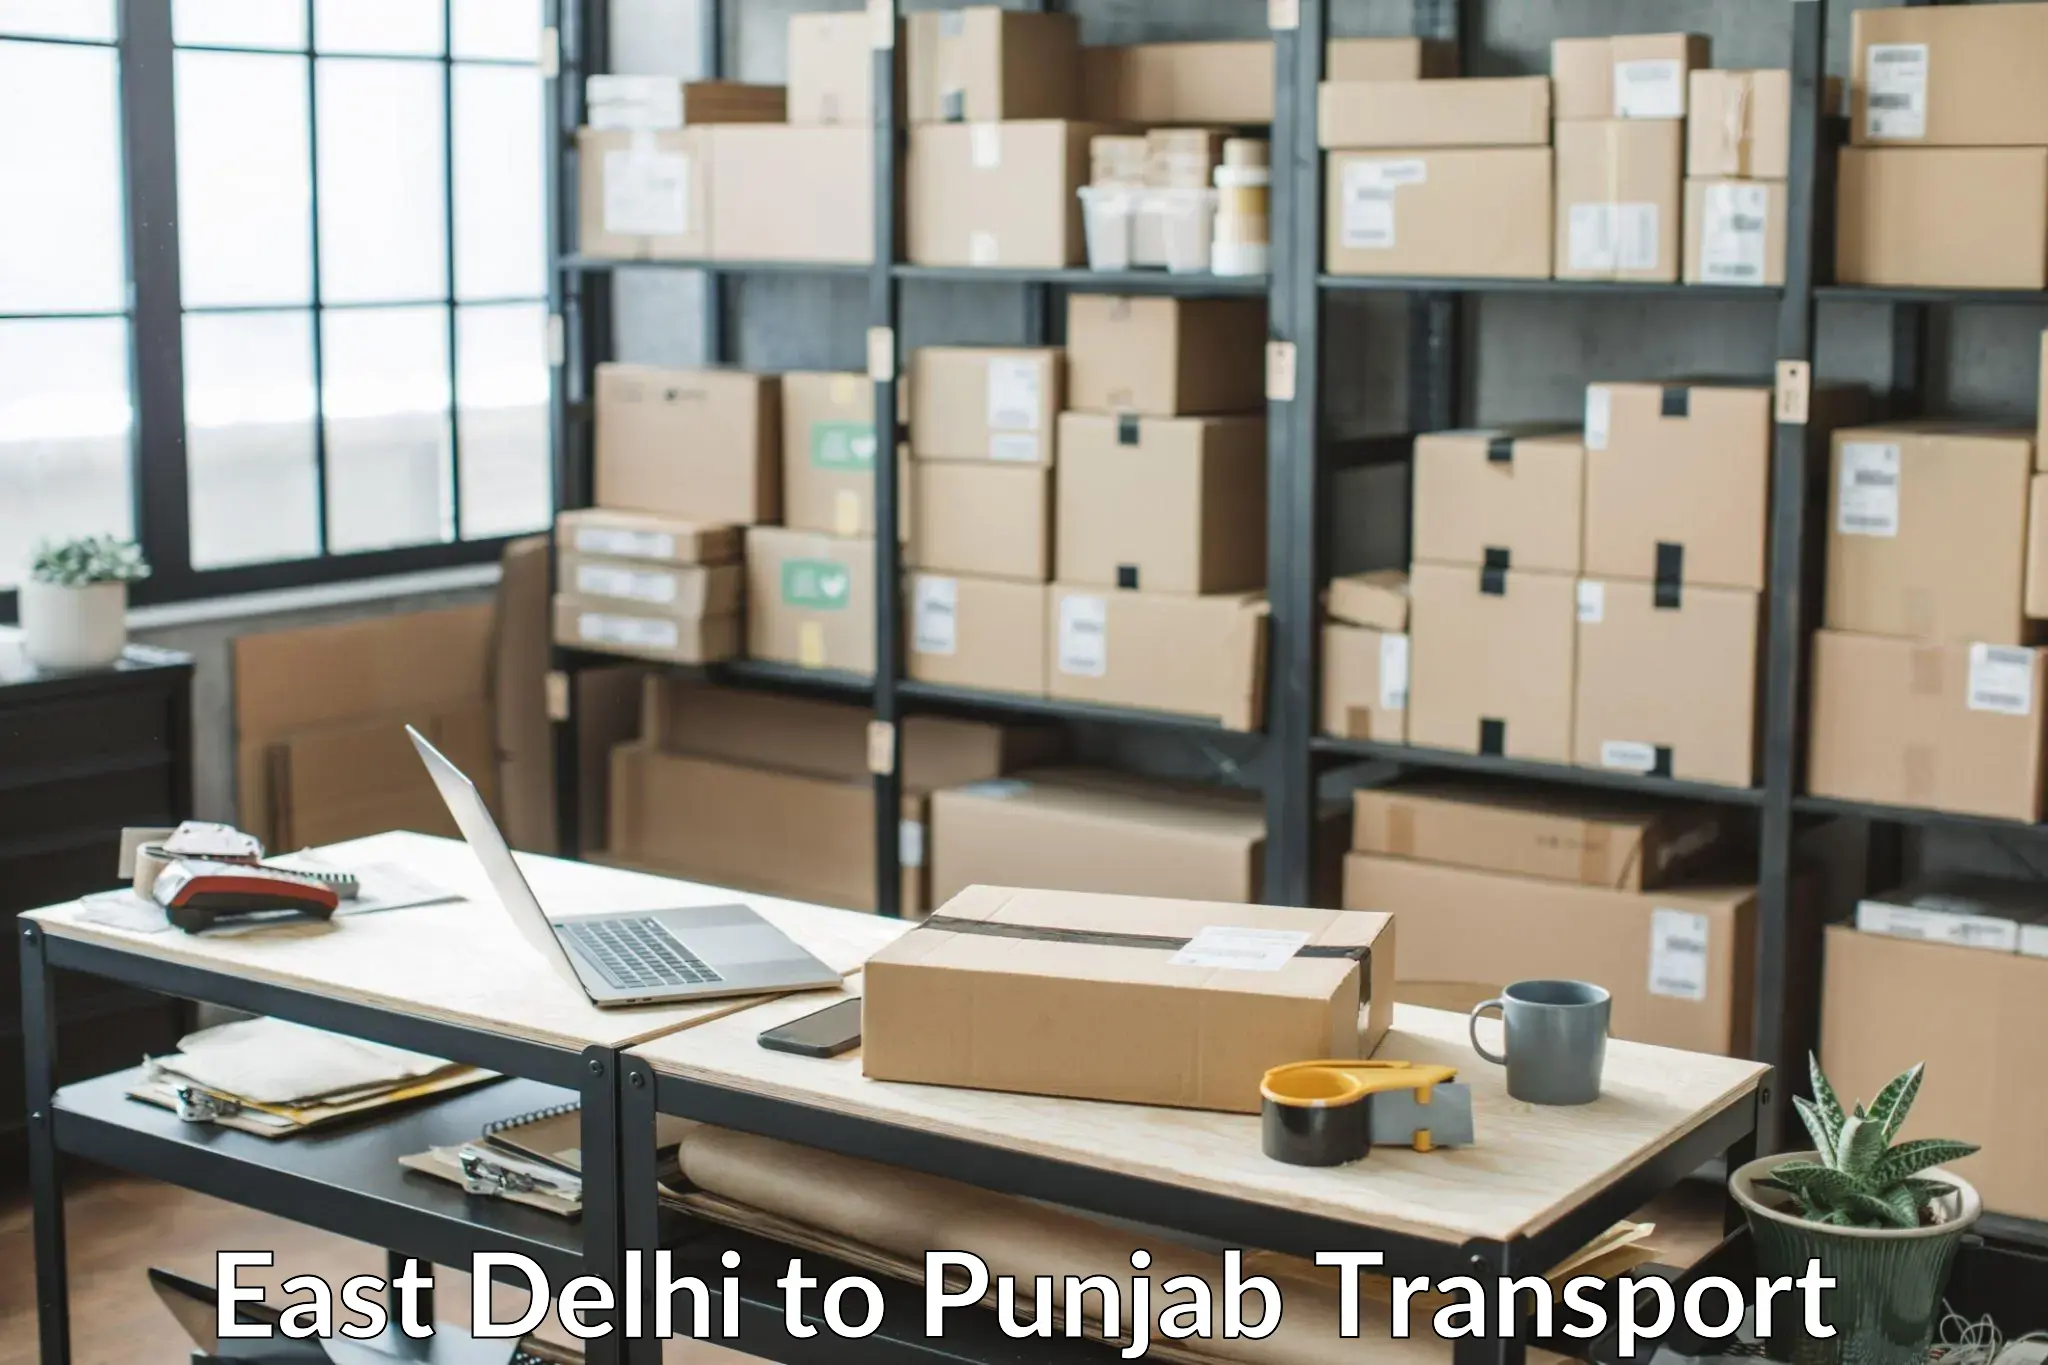 Transportation solution services East Delhi to Faridkot